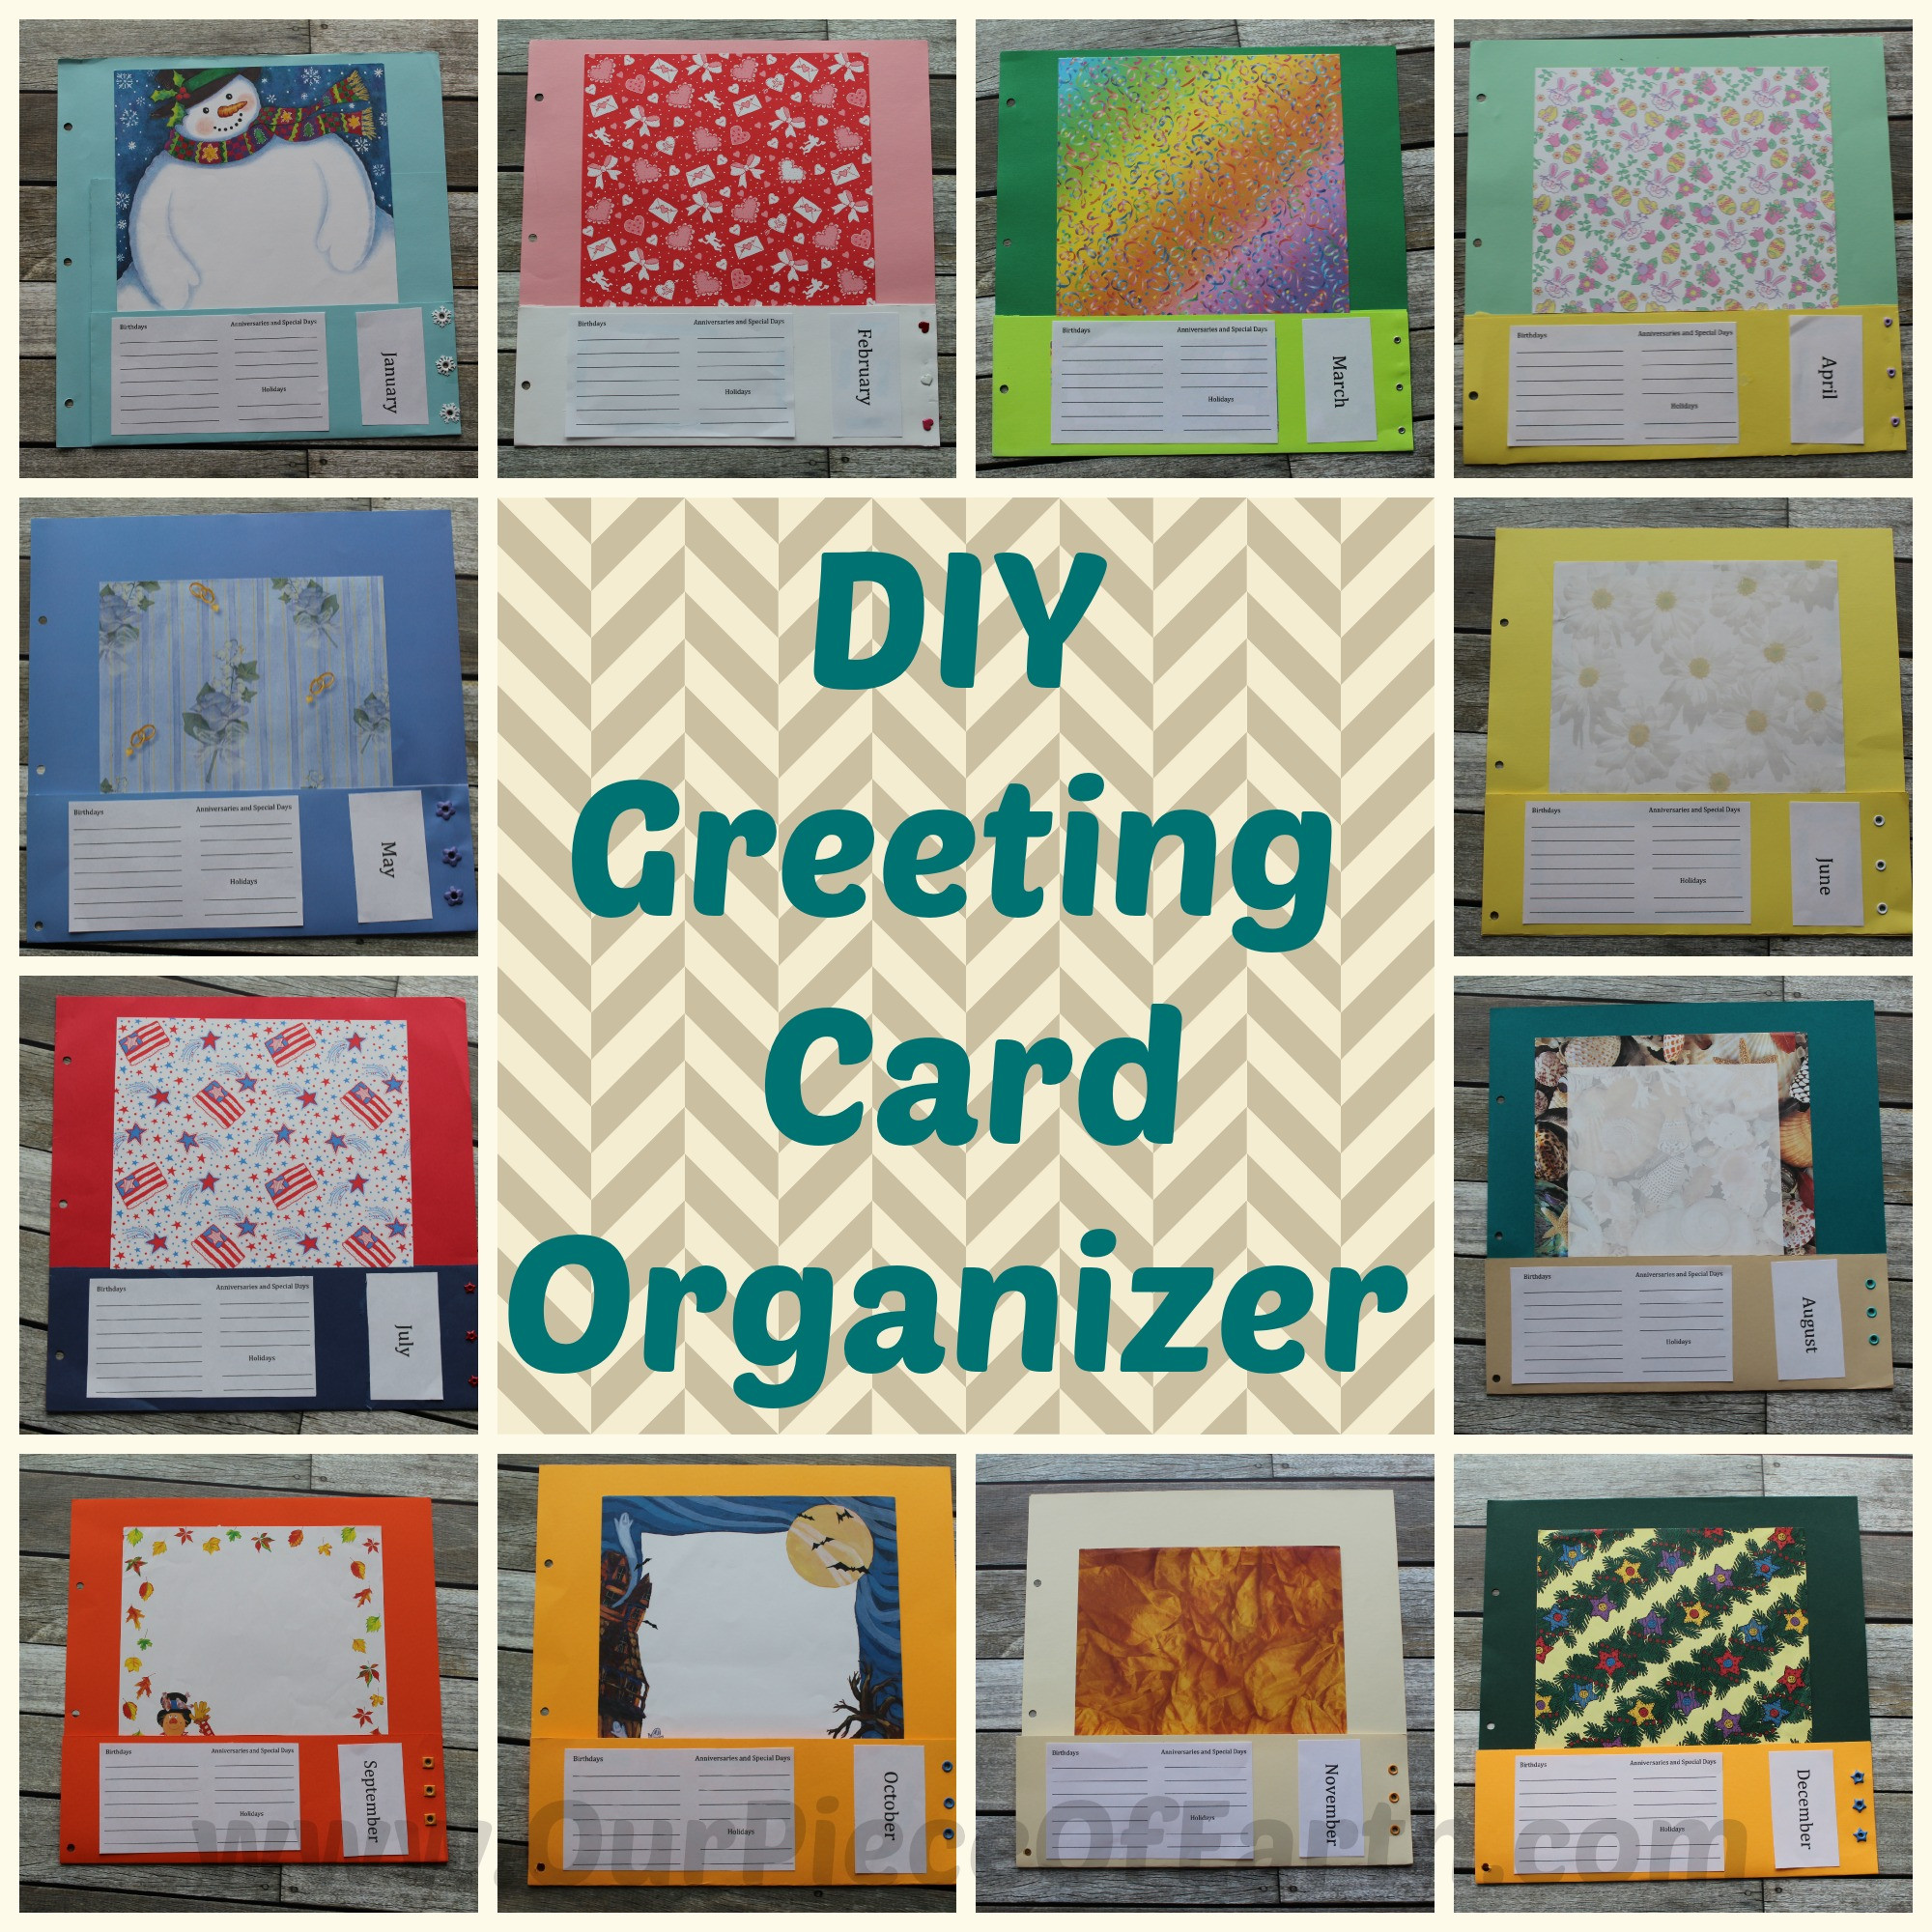 DIY Greeting Card Organizer
 DIY Greeting Card Organizer Our Piece of Earth